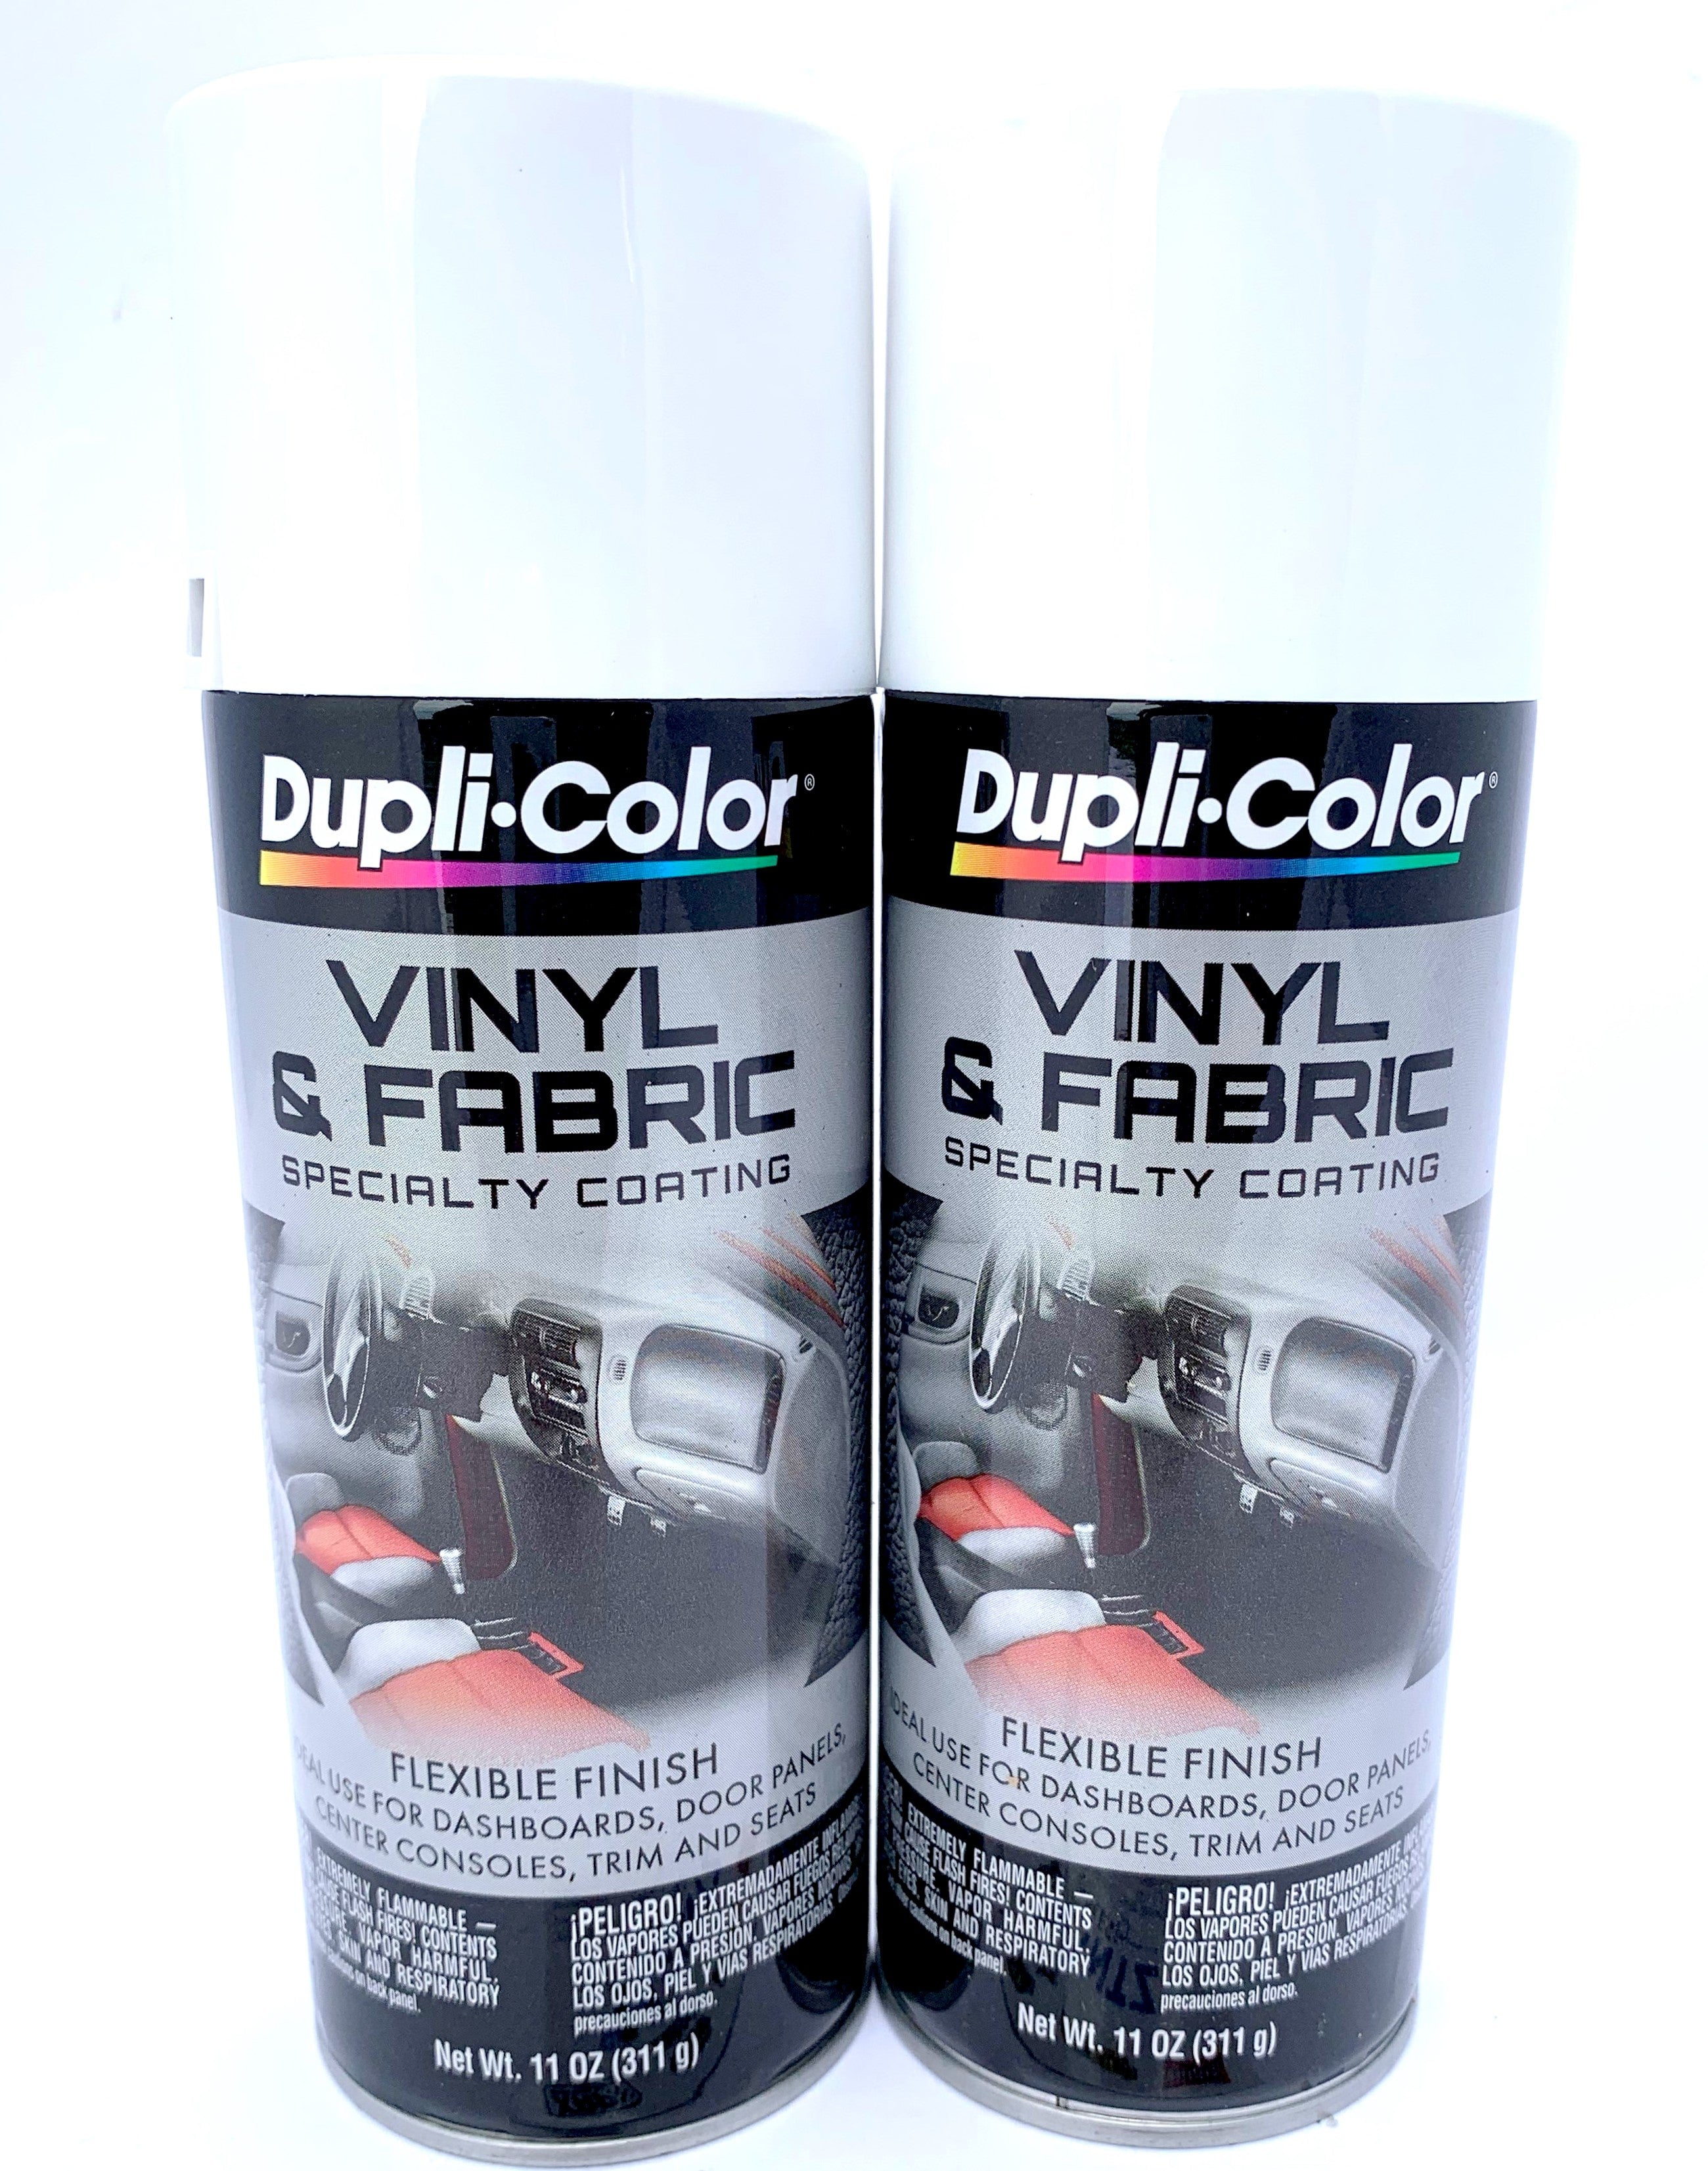 Dupli-Color Vinyl & Fabric Spray High Performance Clear Aerosol